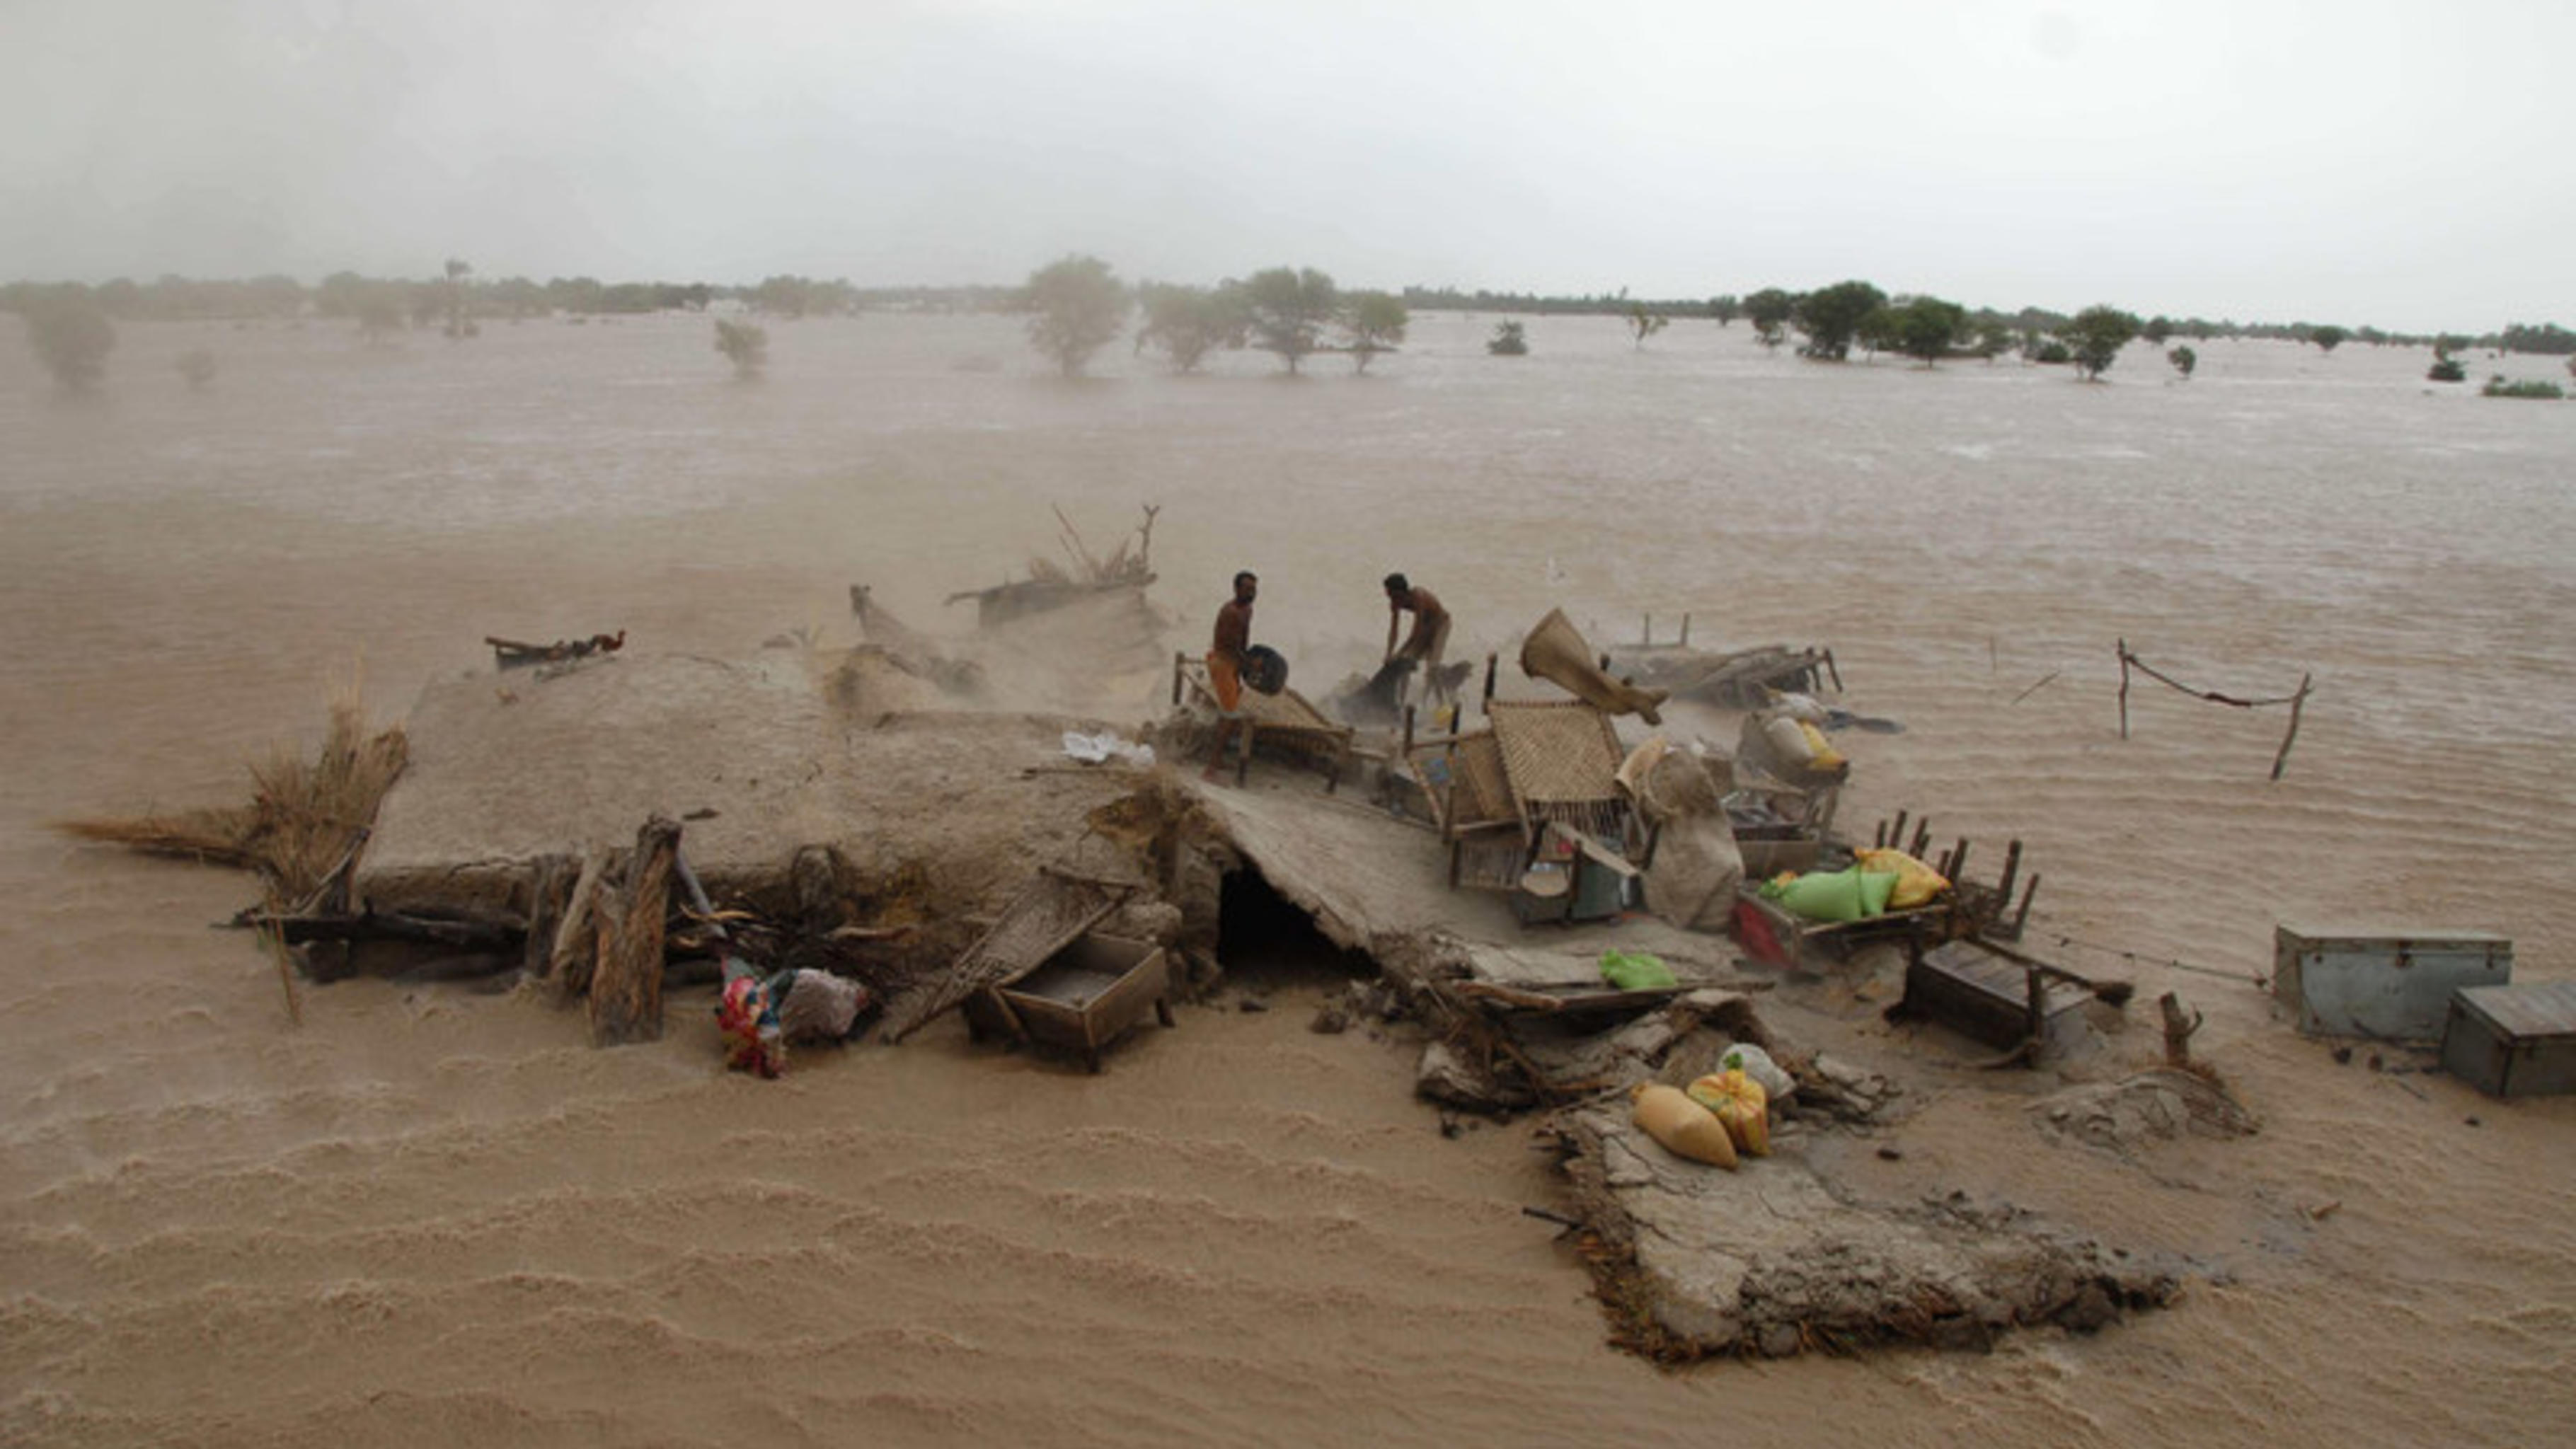 Foto: Menschen warten auf ihre Evakuierung aus den überfluteten Gebieten